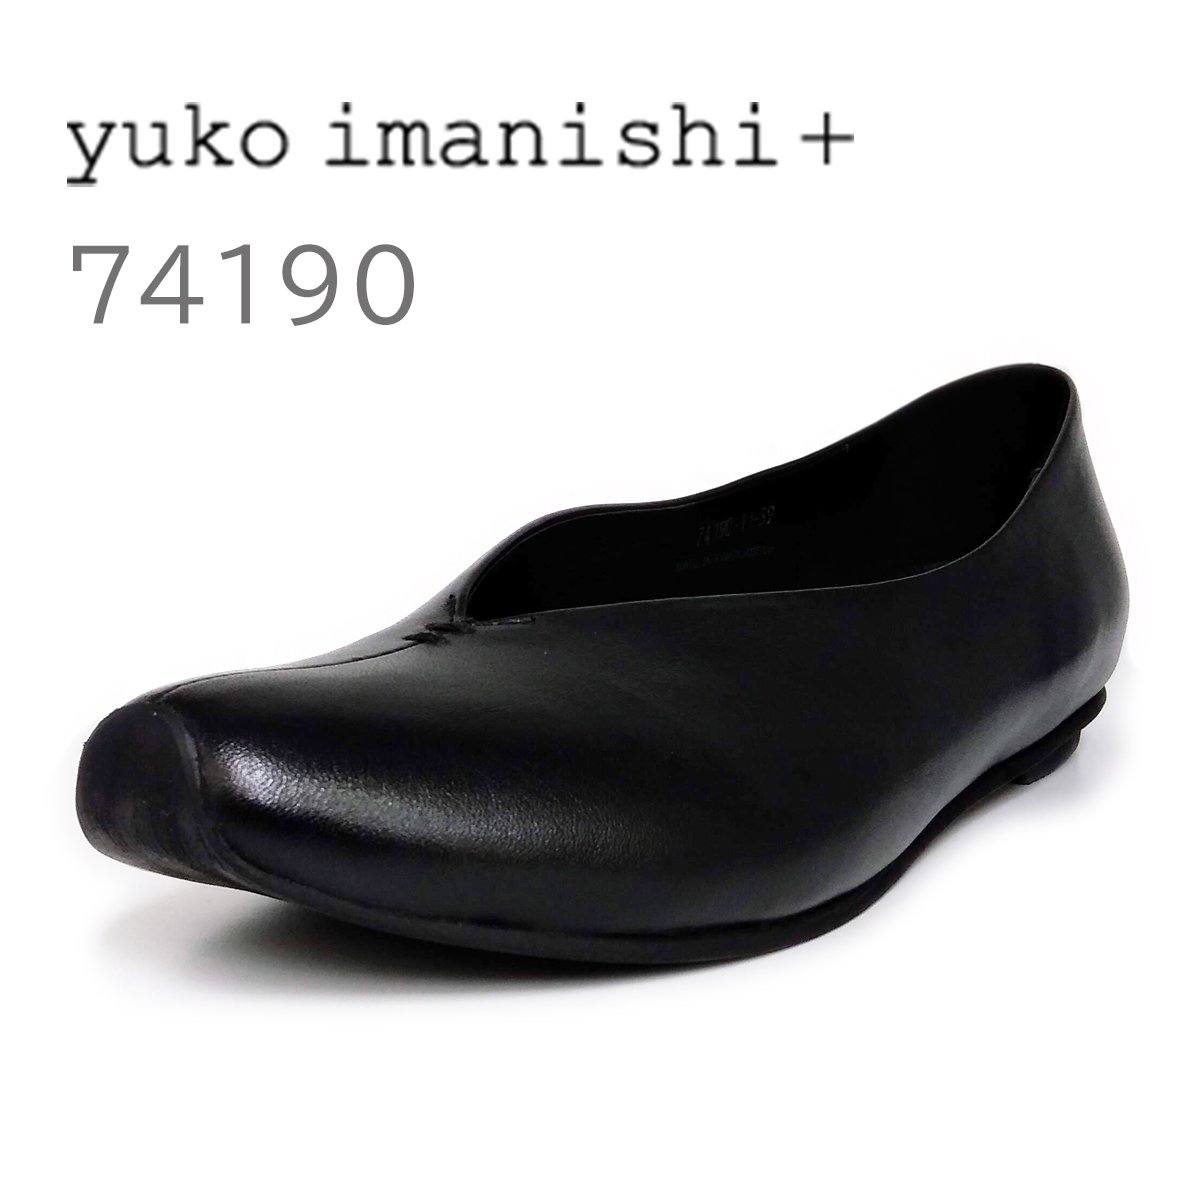 yuko imanishi + レディース ローヒール パンプス 74190 大きいサイズ (39/40/41) - yuko imanishi +（ユウコイマニシプラス） - 202シューズモリ オンラインショップ